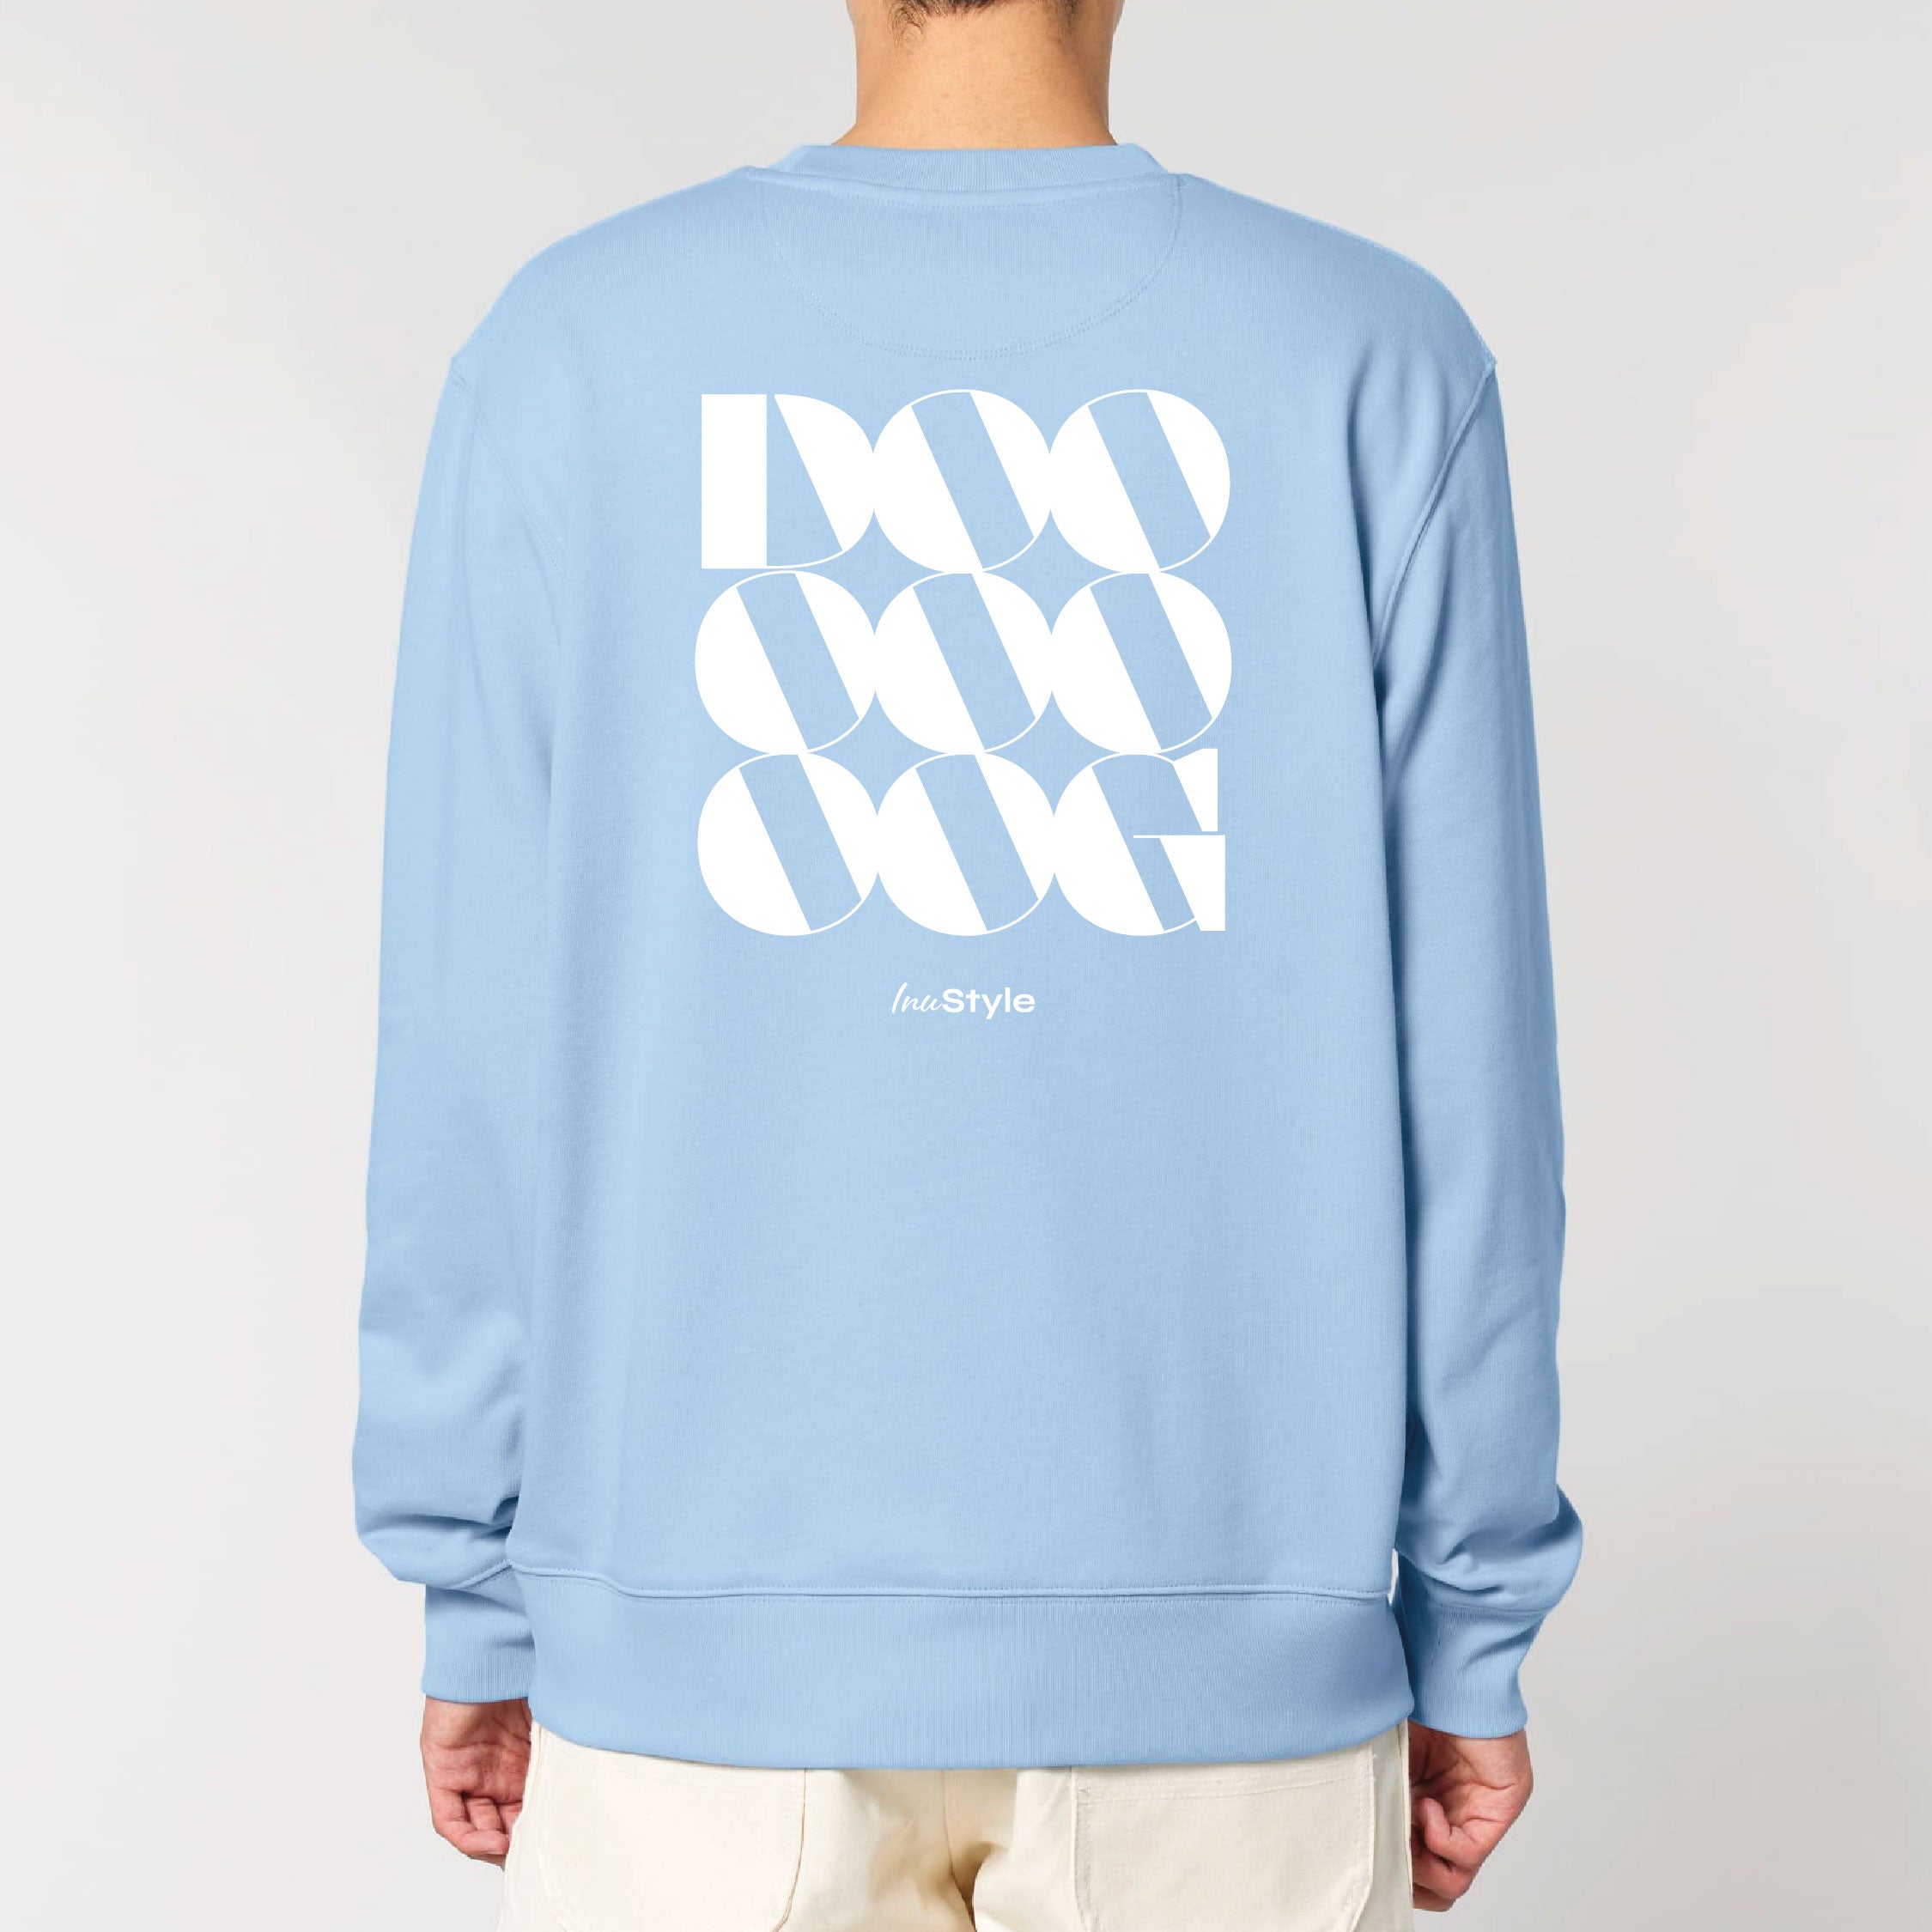 New Inu.style Collection - DOOG - Sweatshirt